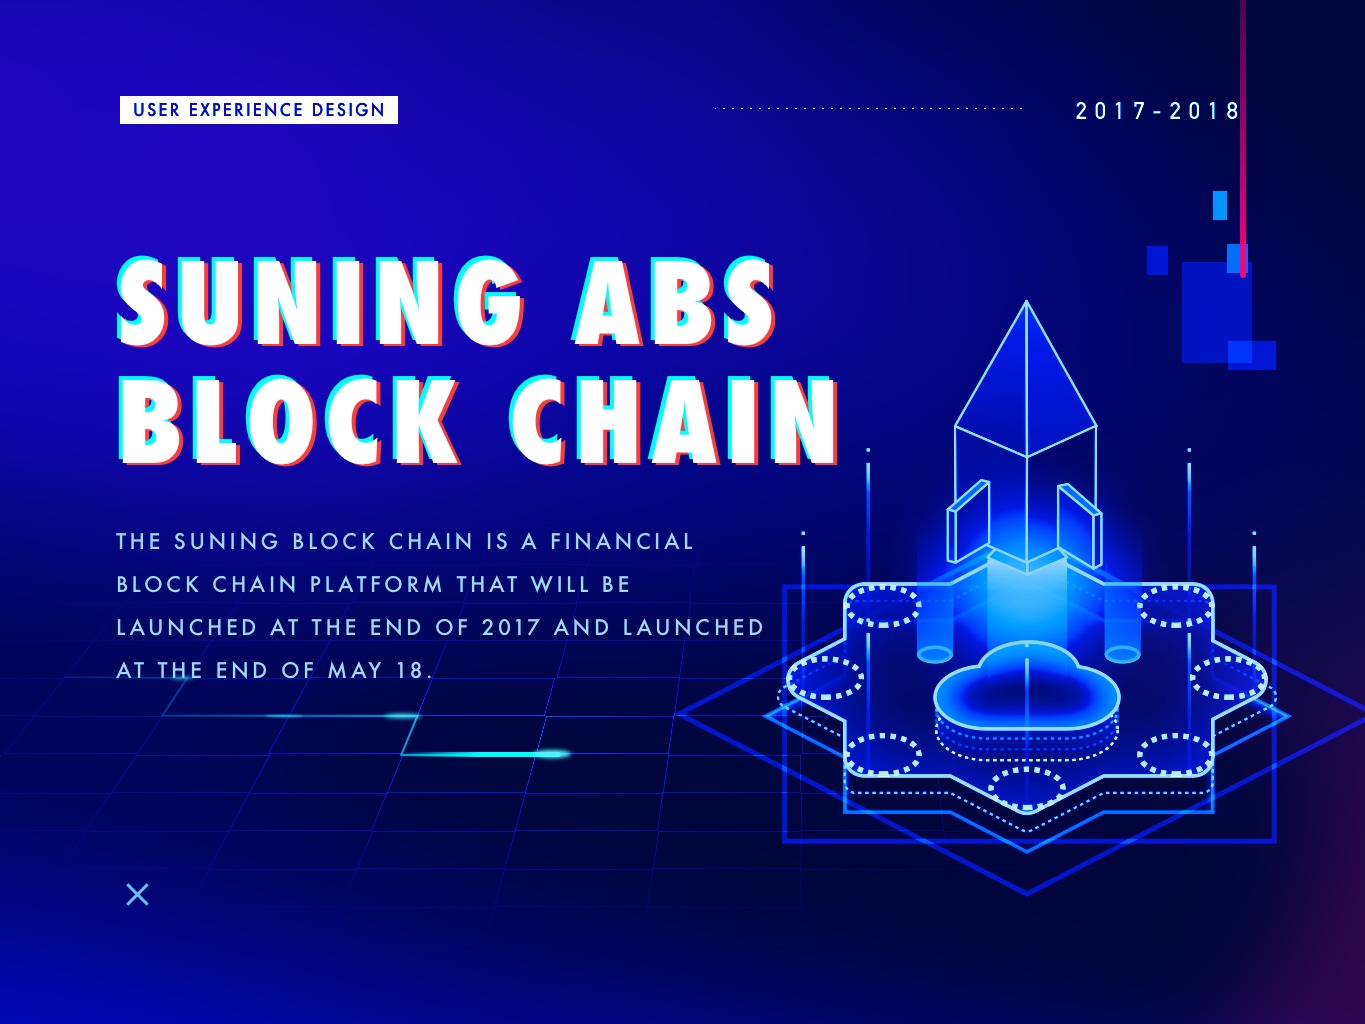 ABS Blockchain Of Suning